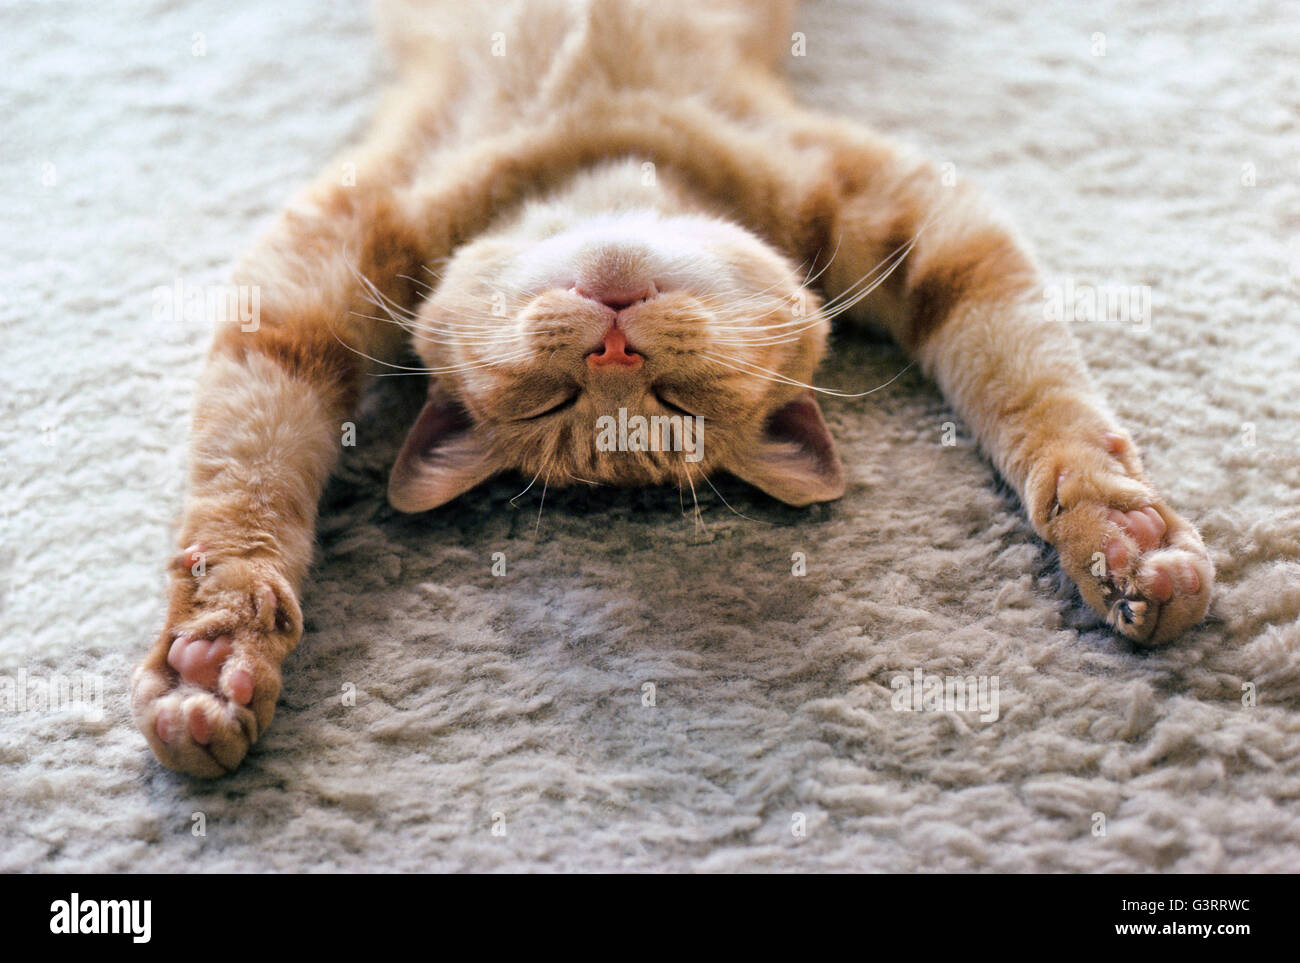 Eine Hauskatze mit ausgestreckten Pfoten NAP friedlich auf dem Rücken auf einem weichen Teppich. Er ist erschöpft, entspannt und schlafenden als diese Nahaufnahme von seinem Gesicht zeigt. Stockfoto